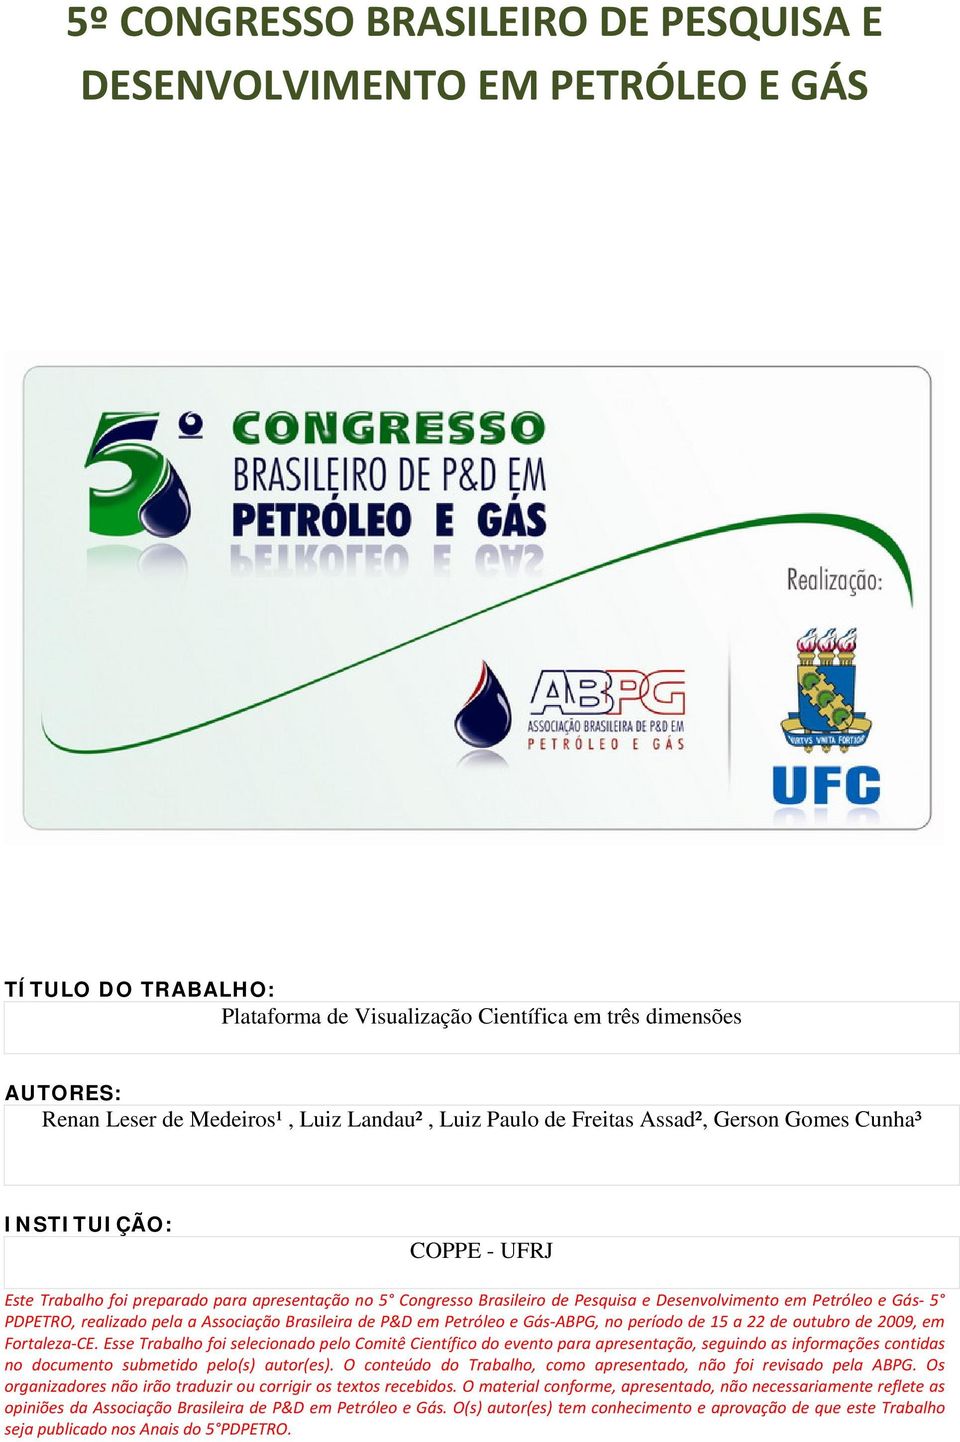 PDPETRO, realizado pela a Associação Brasileira de P&D em Petróleo e Gás ABPG, no período de 15 a 22 de outubro de 2009, em Fortaleza CE.